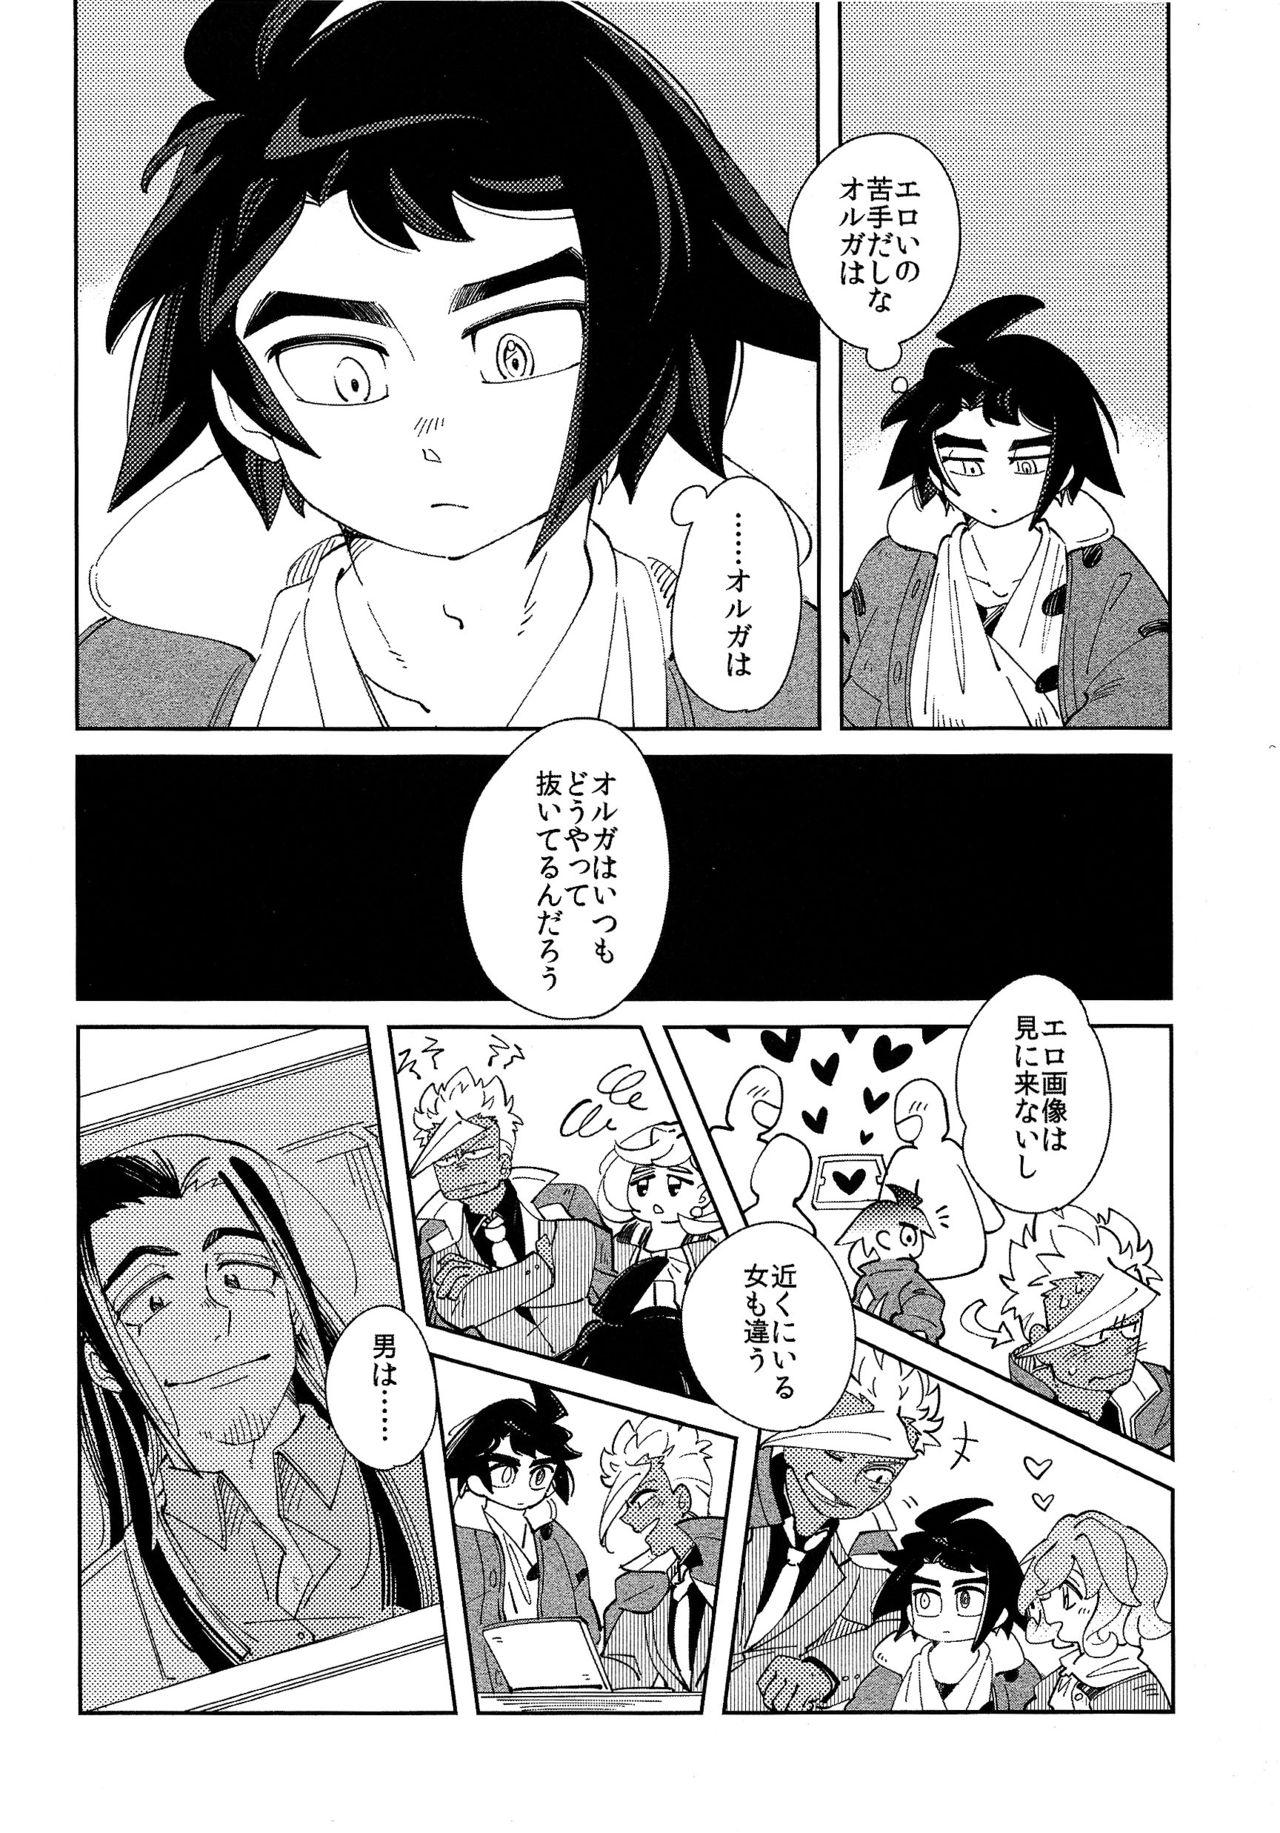 Fun Moufu no Nakami wa? - Mobile suit gundam tekketsu no orphans Bound - Page 5